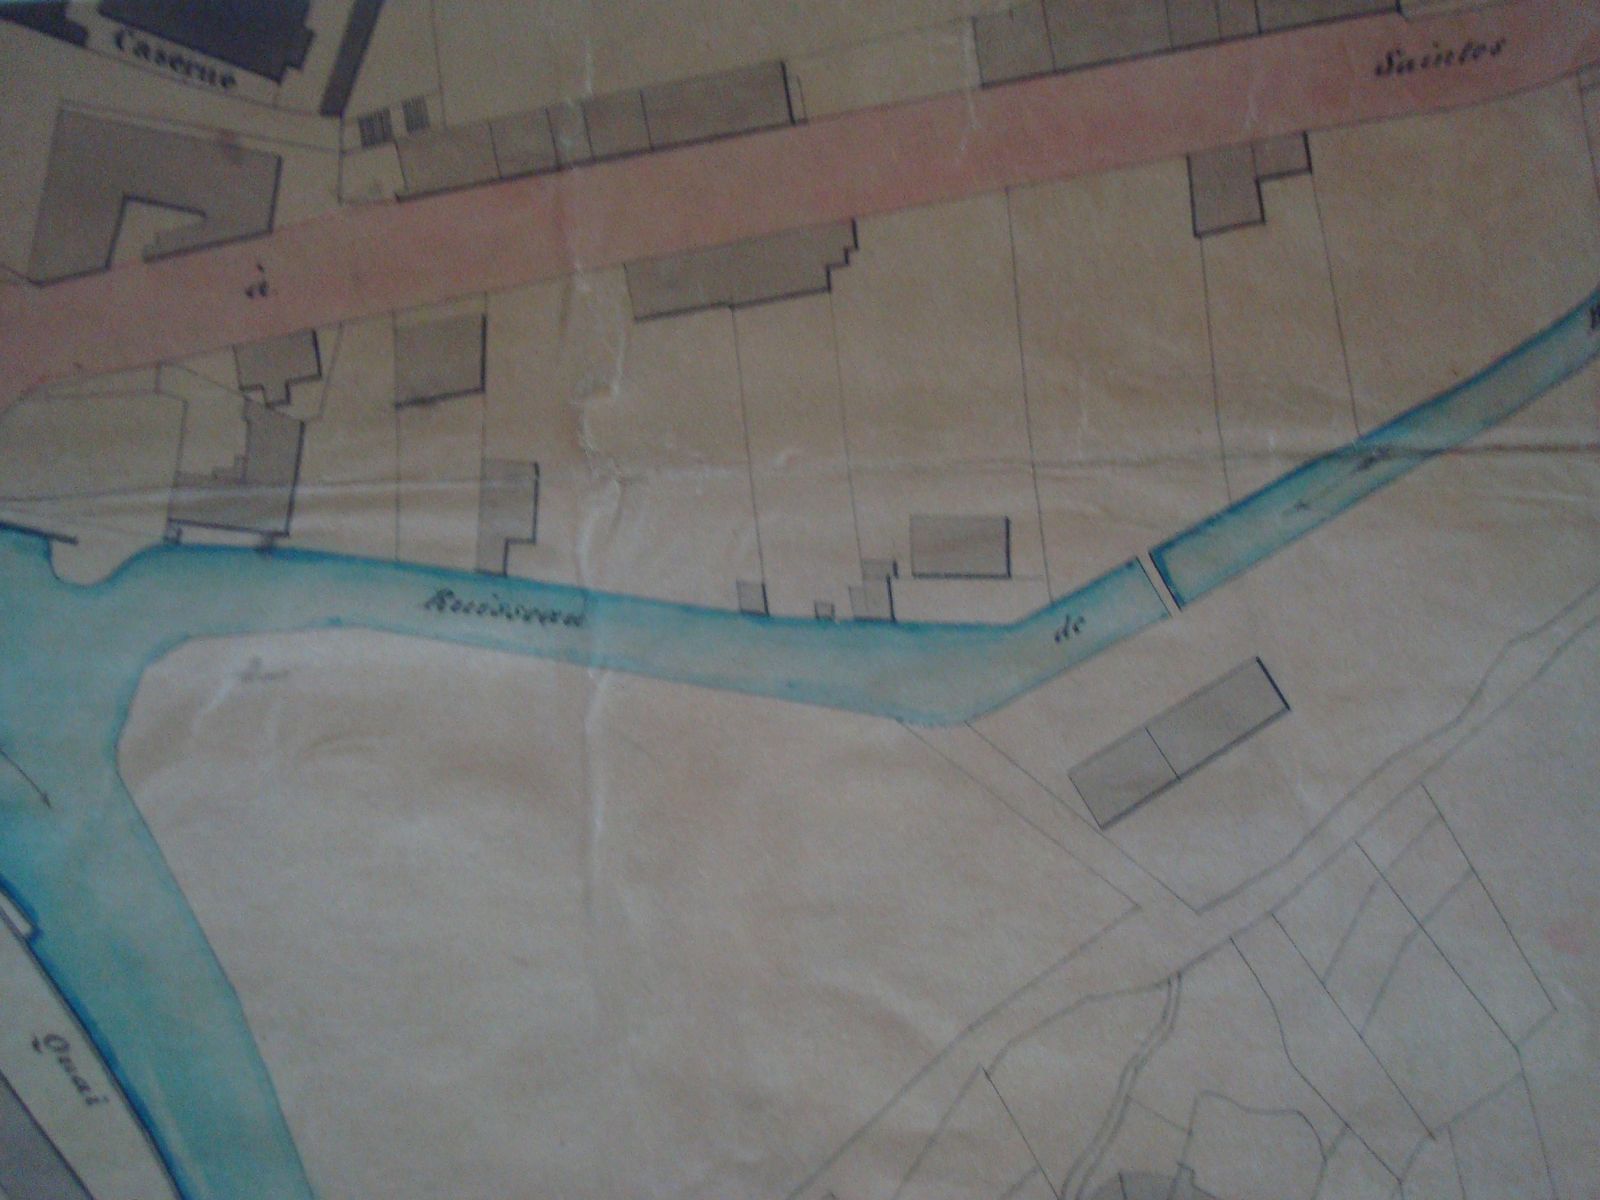 Extrait du plan de la ville d'Aubusson et de ses faubourgs dans la seconde moitié du 19e siècle, avec le bâtiment de la manufacture Castel, au nord du ruisseau de la Beauze (AN)